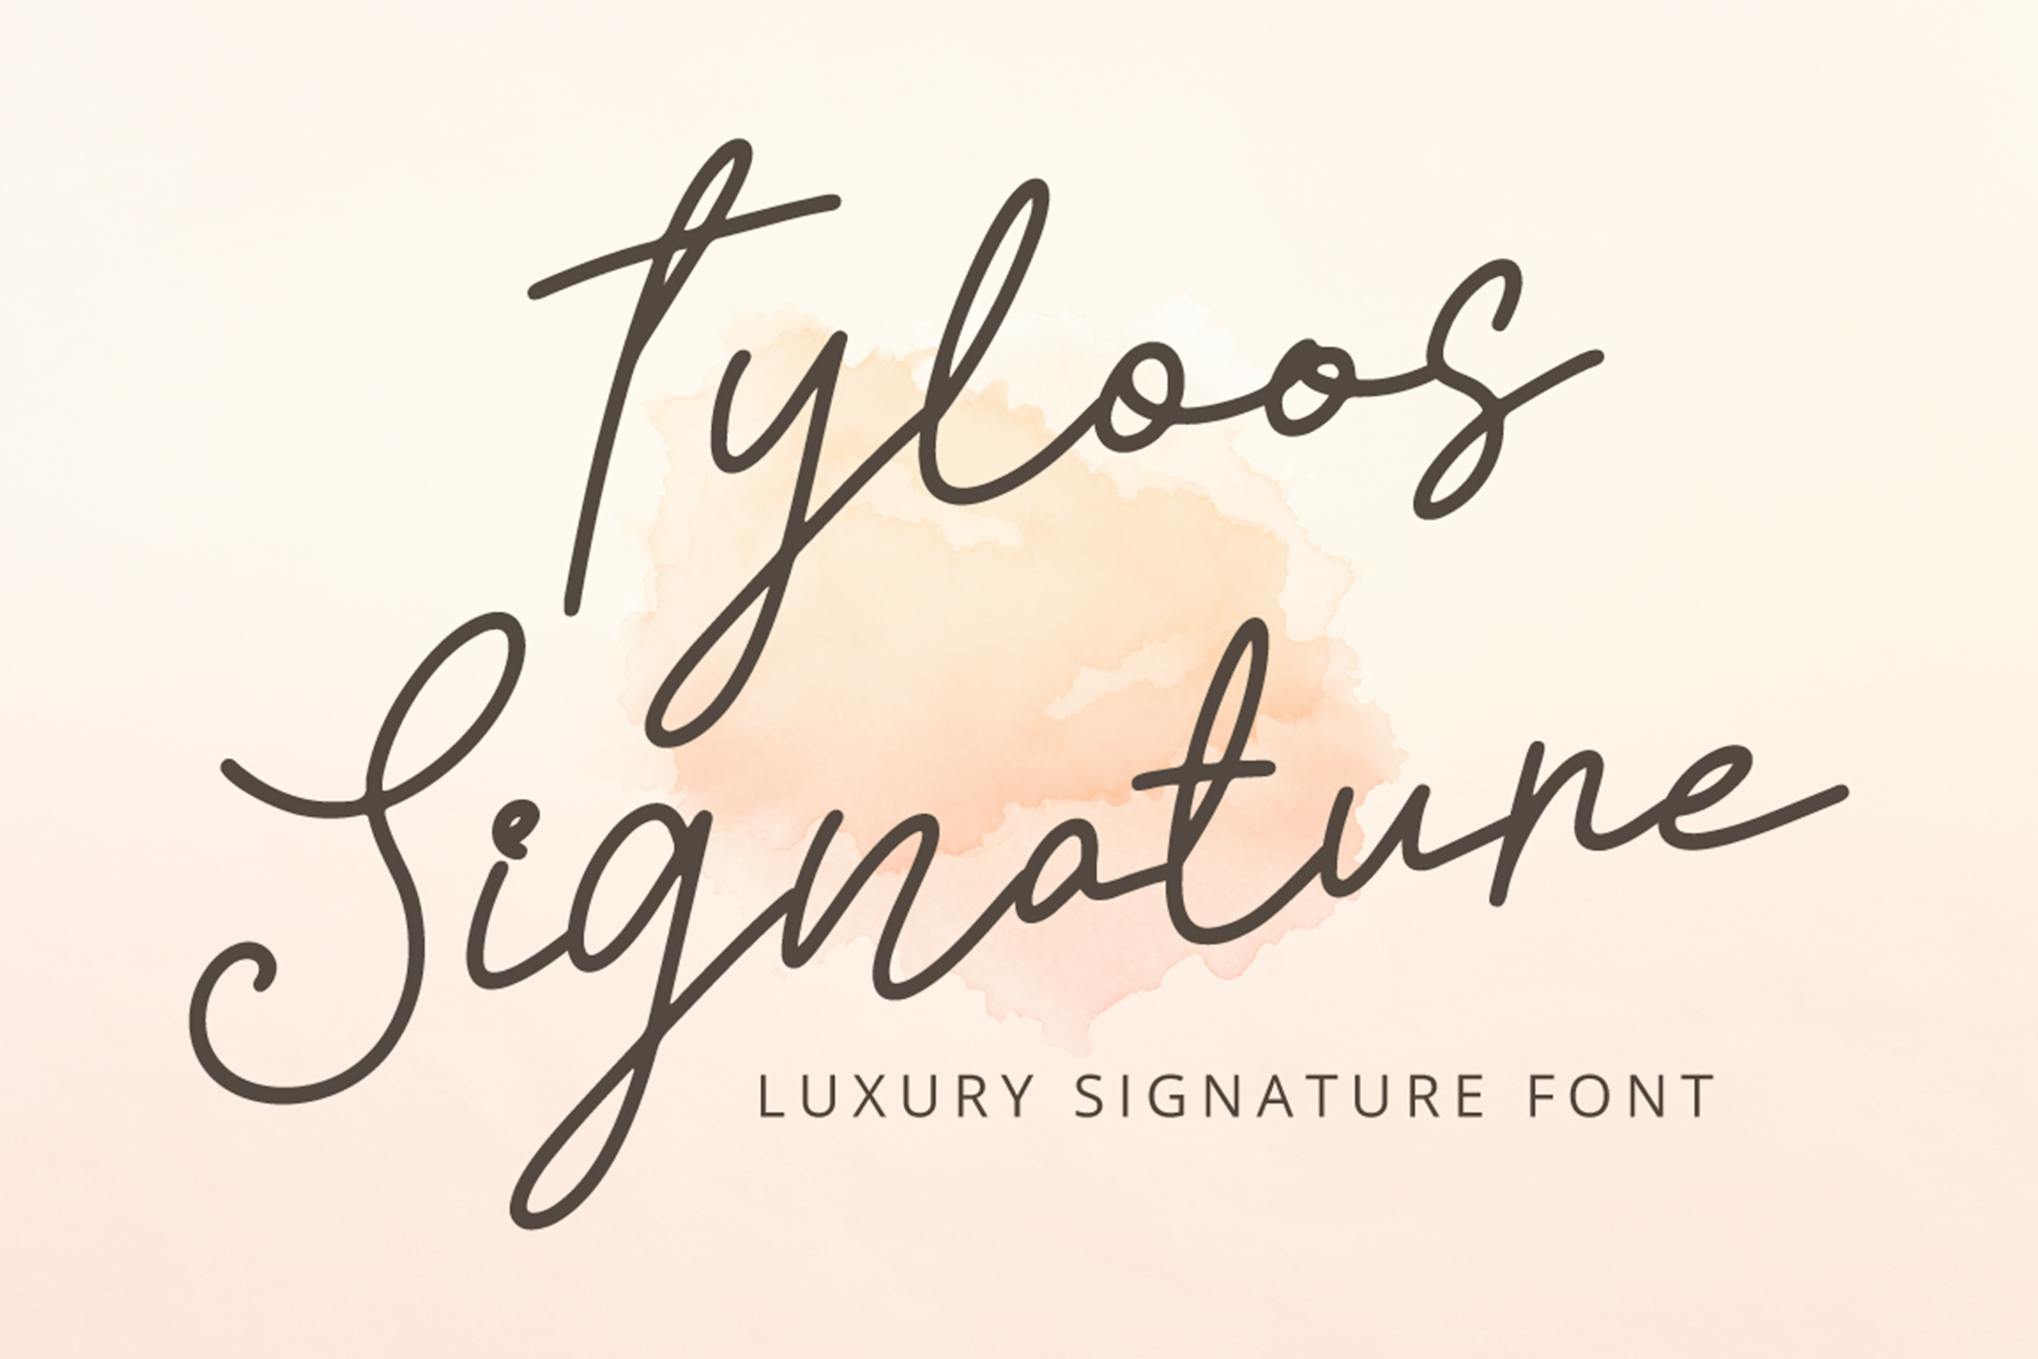 Tyloos Signature - Luxury Signature Font